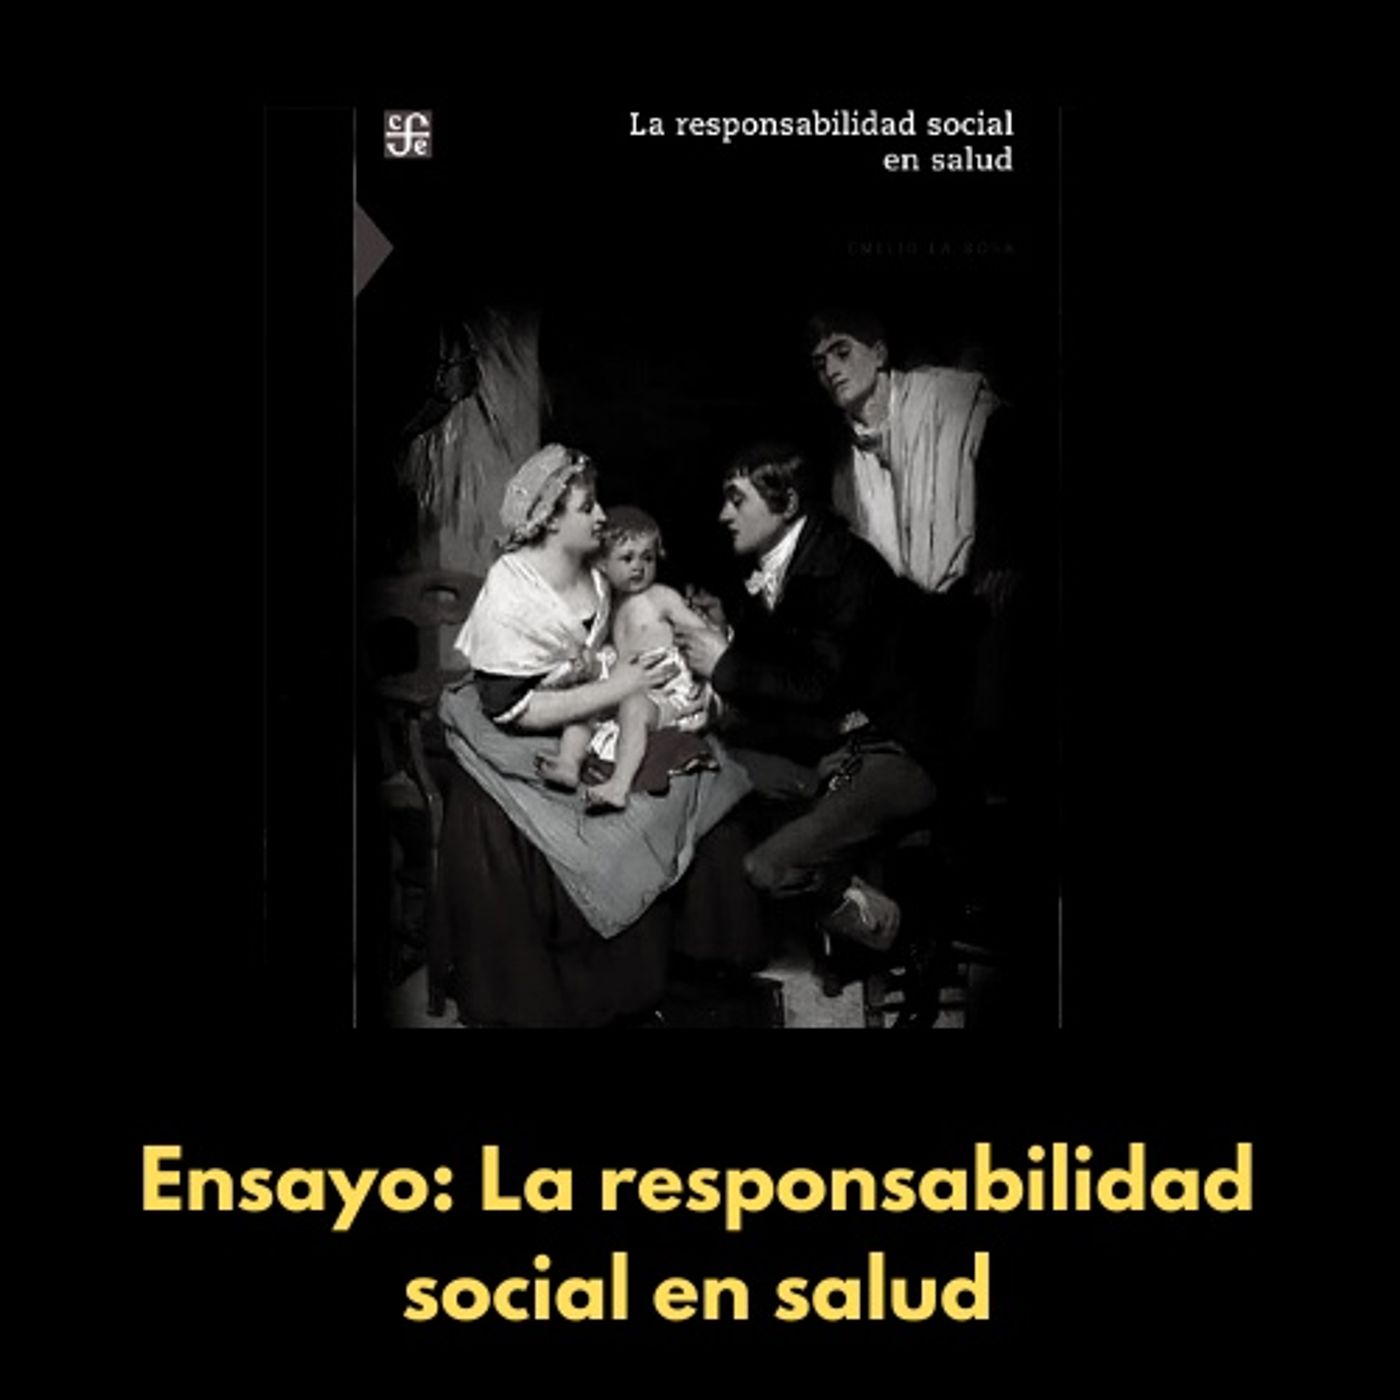 El libro de la semana: "La responsabilidad social en salud" de Emilio La Rosa (Fondo de cultura económica, 2020)